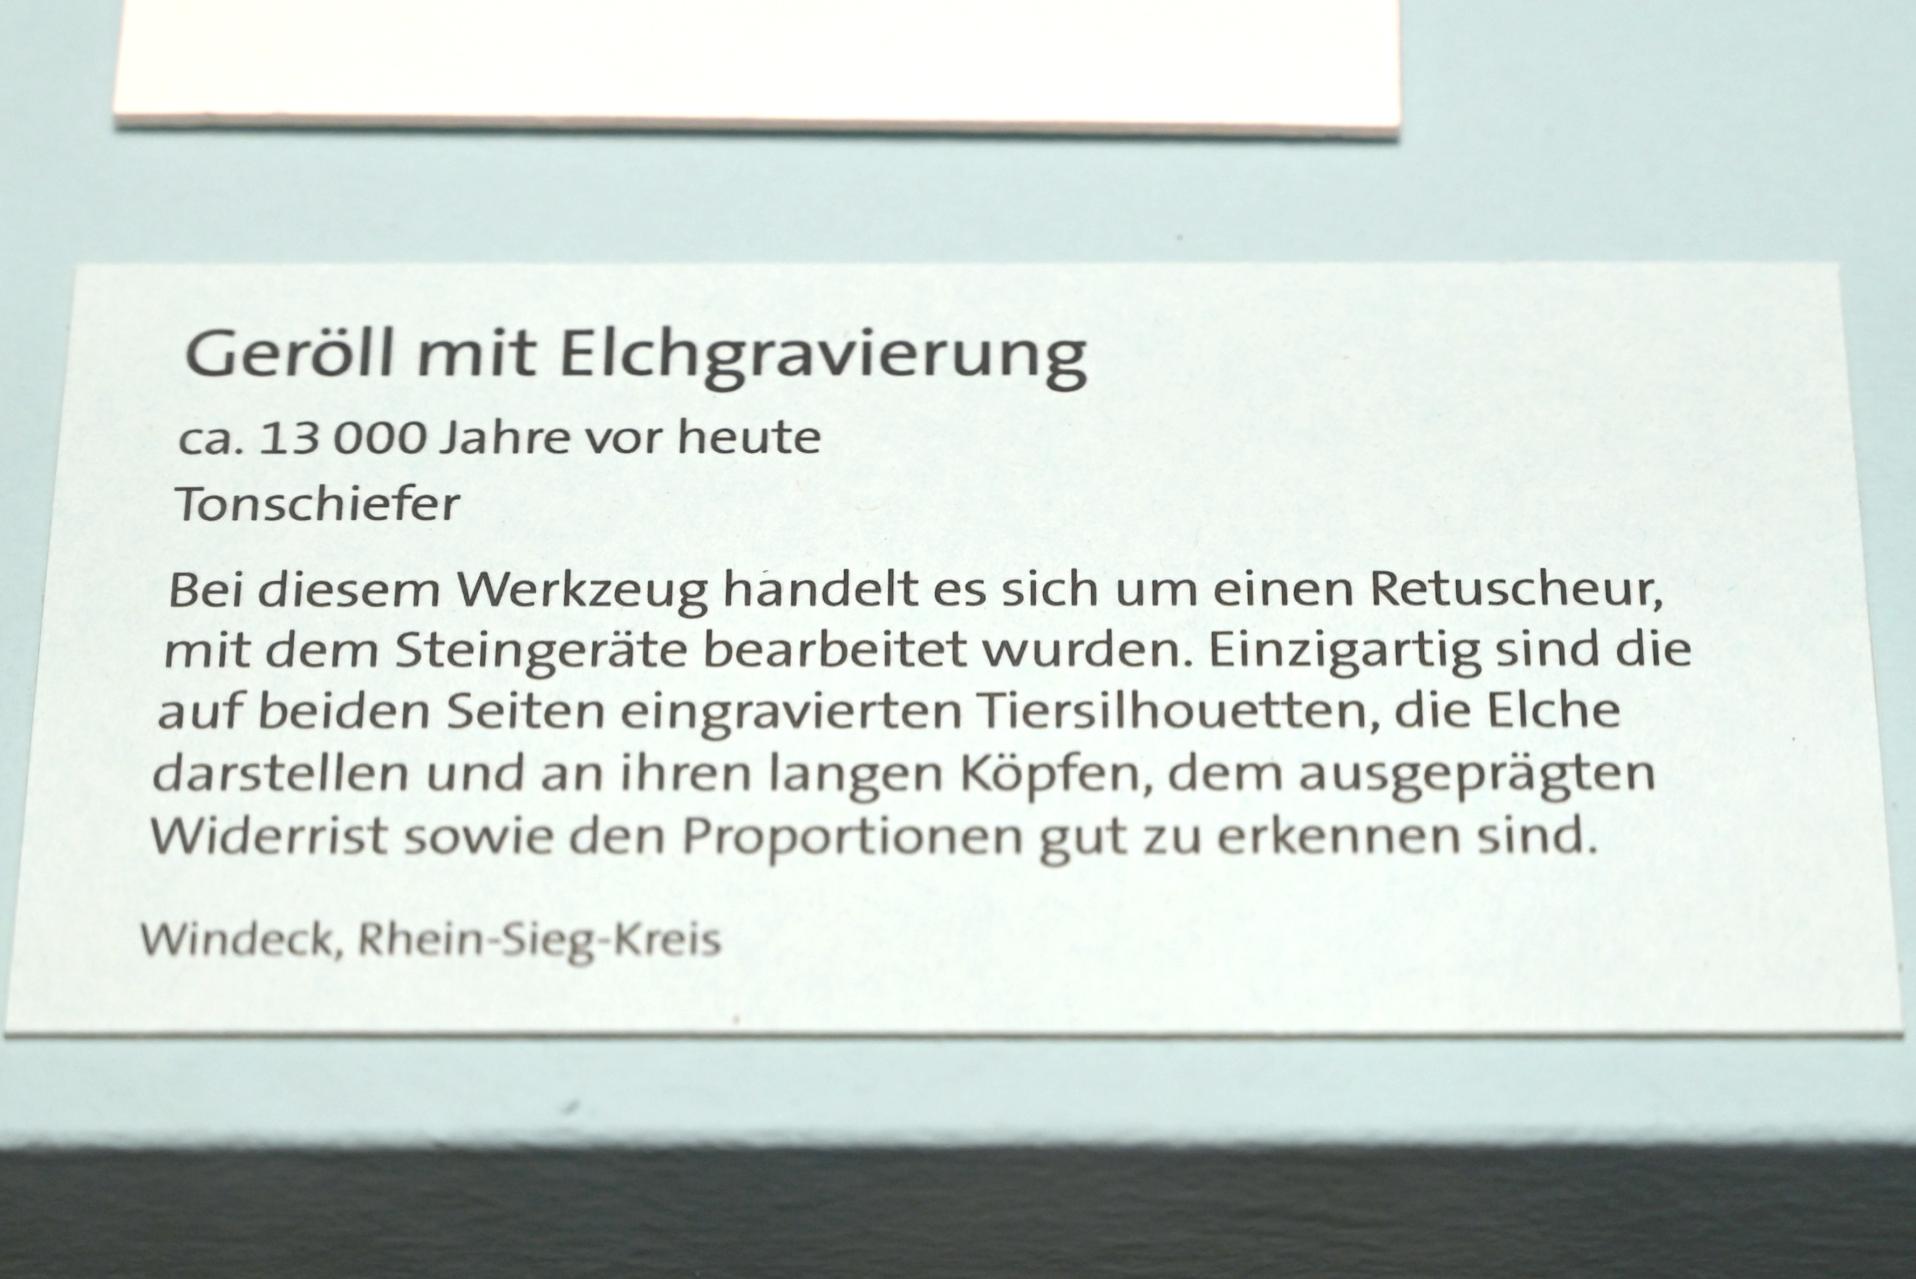 Retuscheur mit Elchgravierung, Spätpaläolithikum, 13000 - 10000 v. Chr., 11000 v. Chr., Bild 3/4